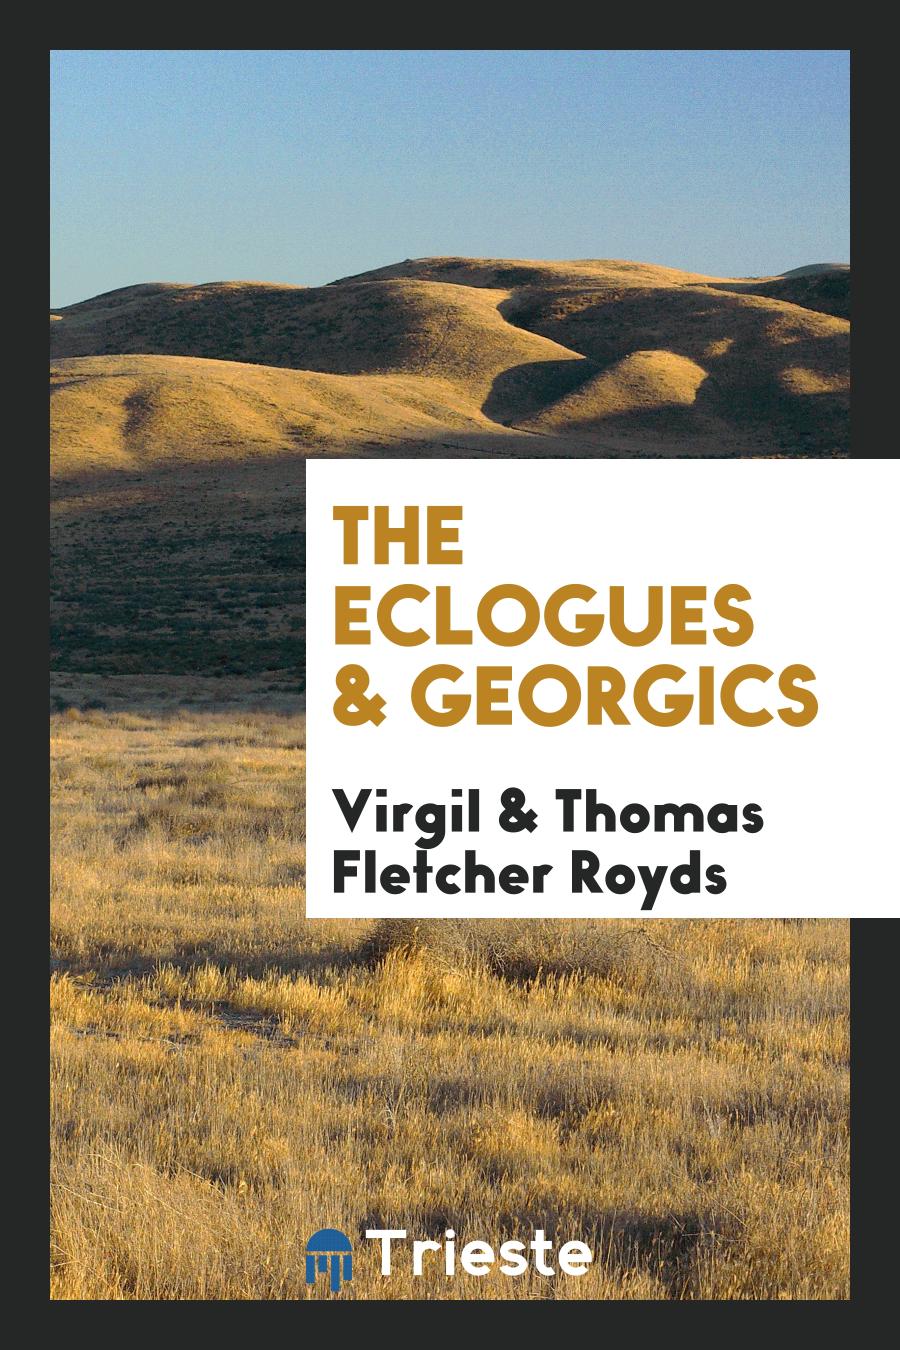 Virgil ., Thomas Fletcher Royds - The eclogues & Georgics